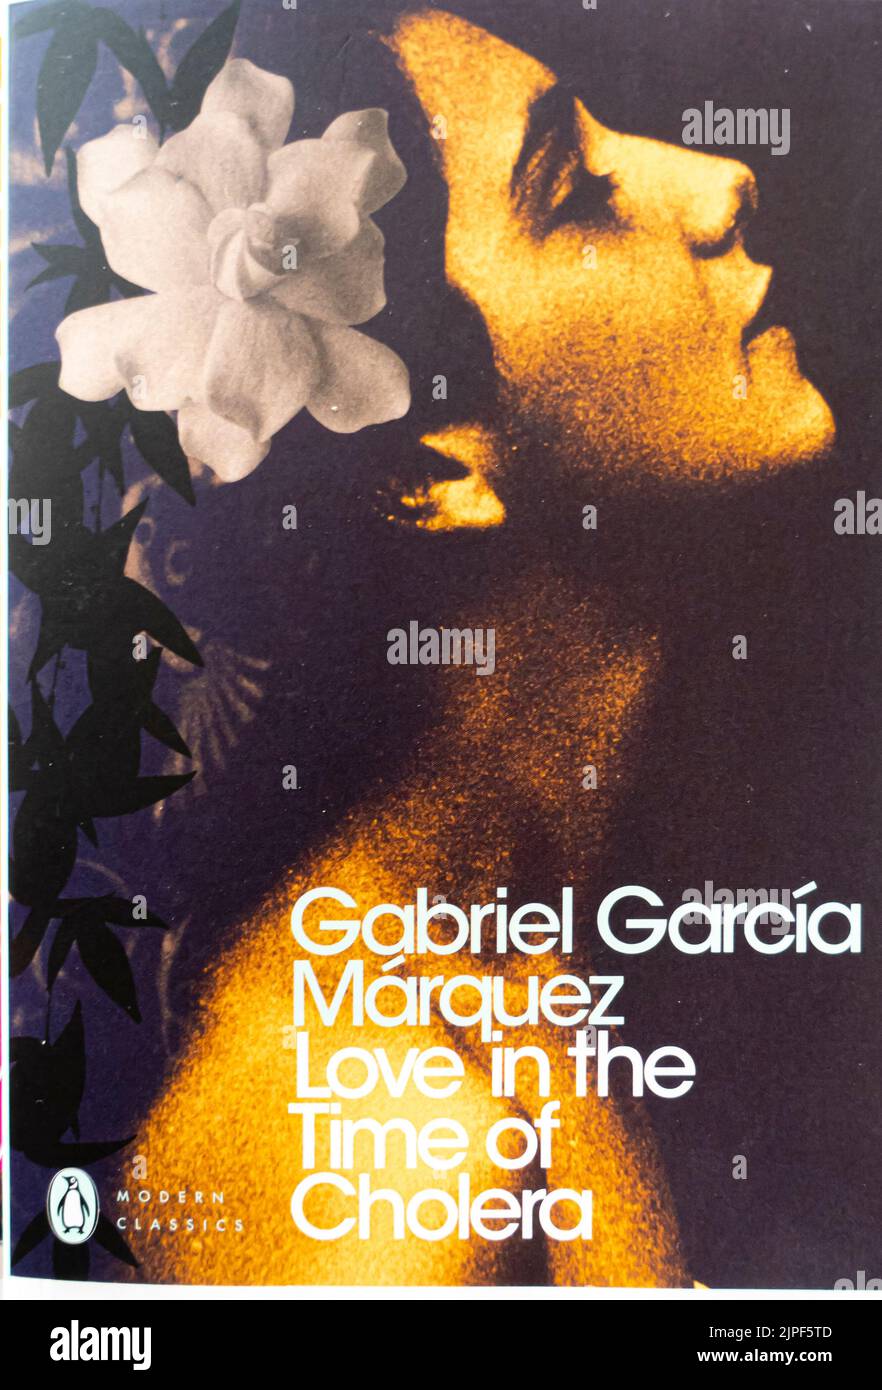 Gabriel Garcia Marquez - chronique d'une mort avant-date 1981 - couverture du livre Banque D'Images